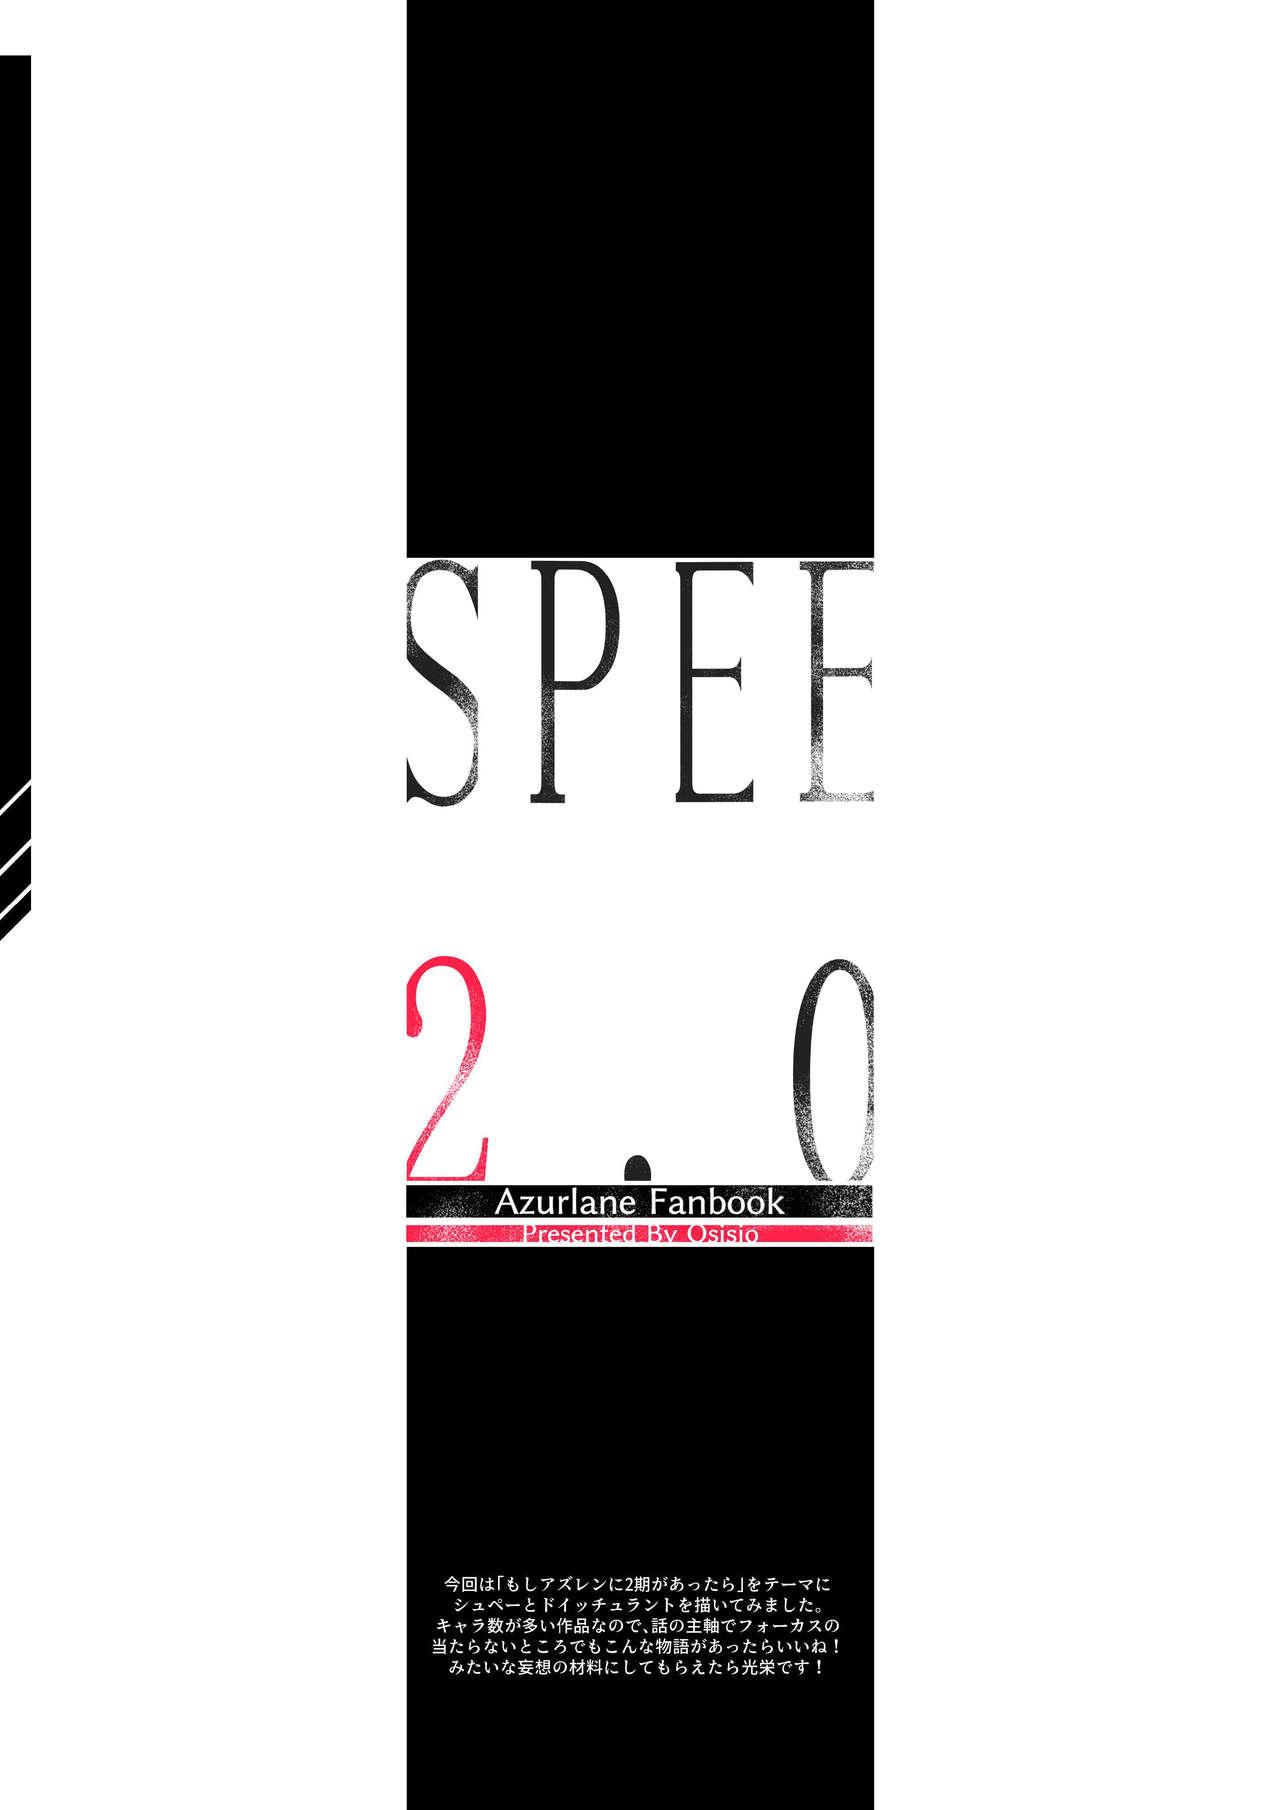 SPEE2.0 2